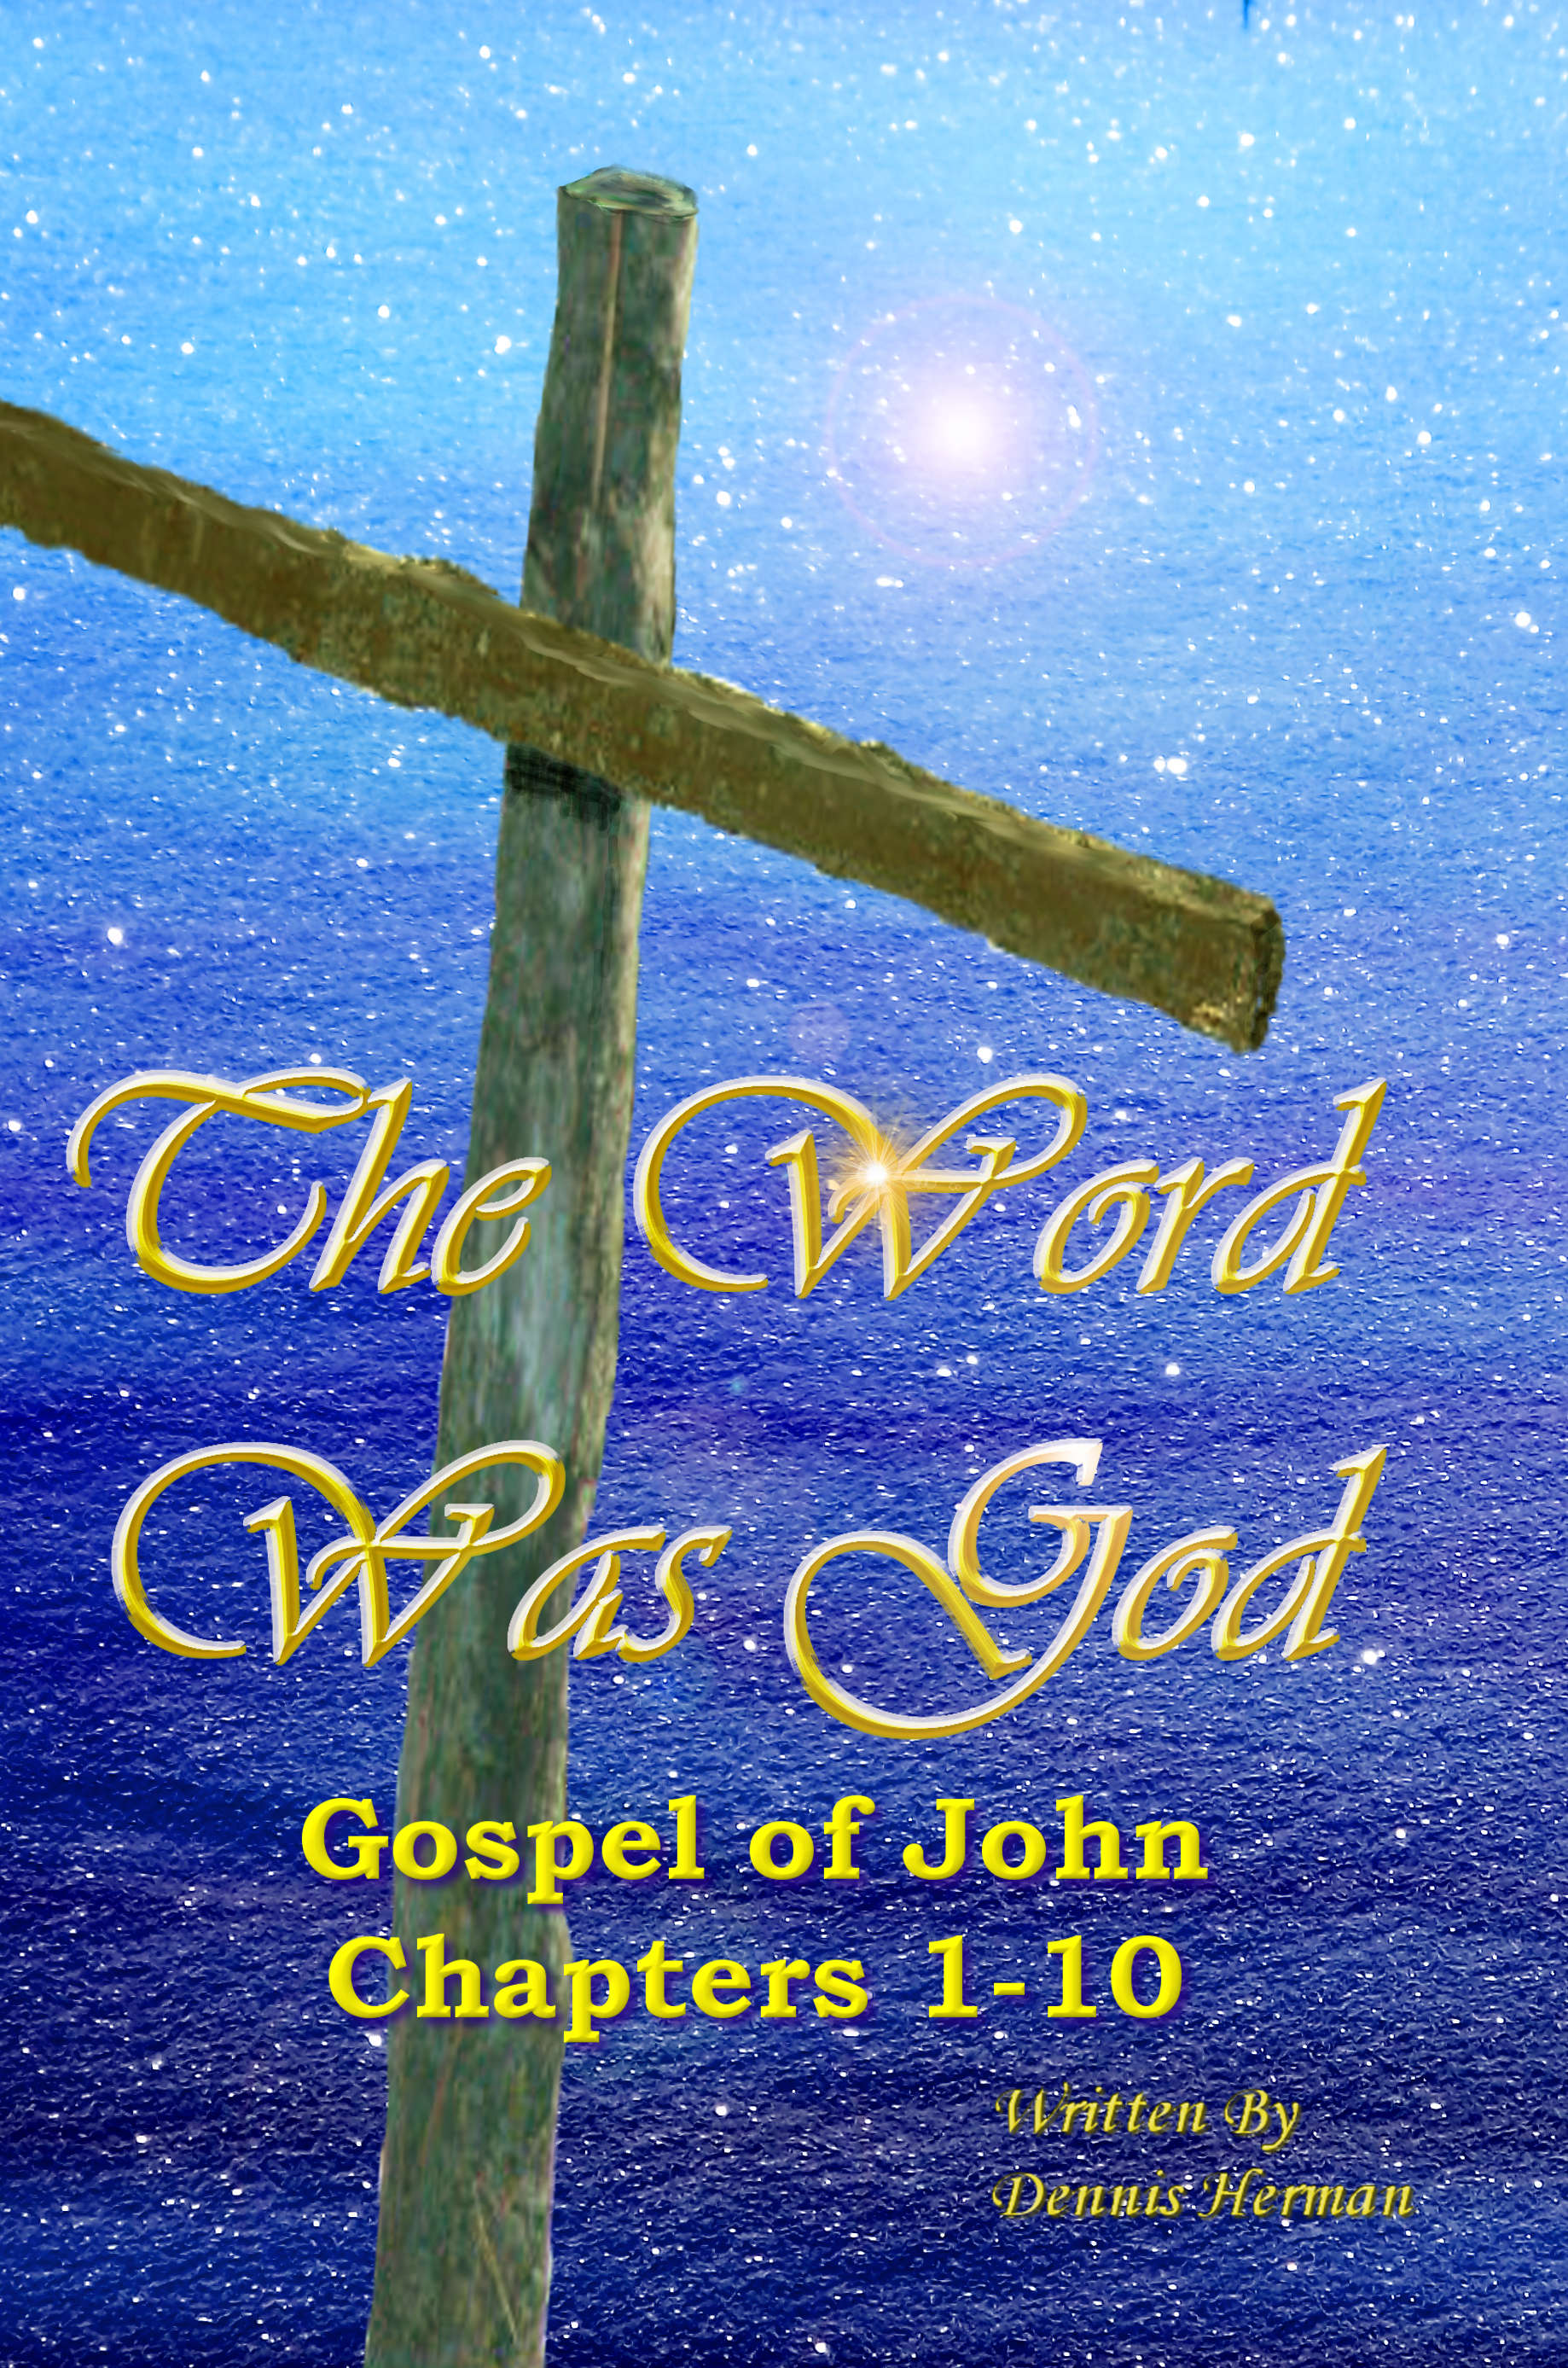 Bilbe Study on John's Gospel